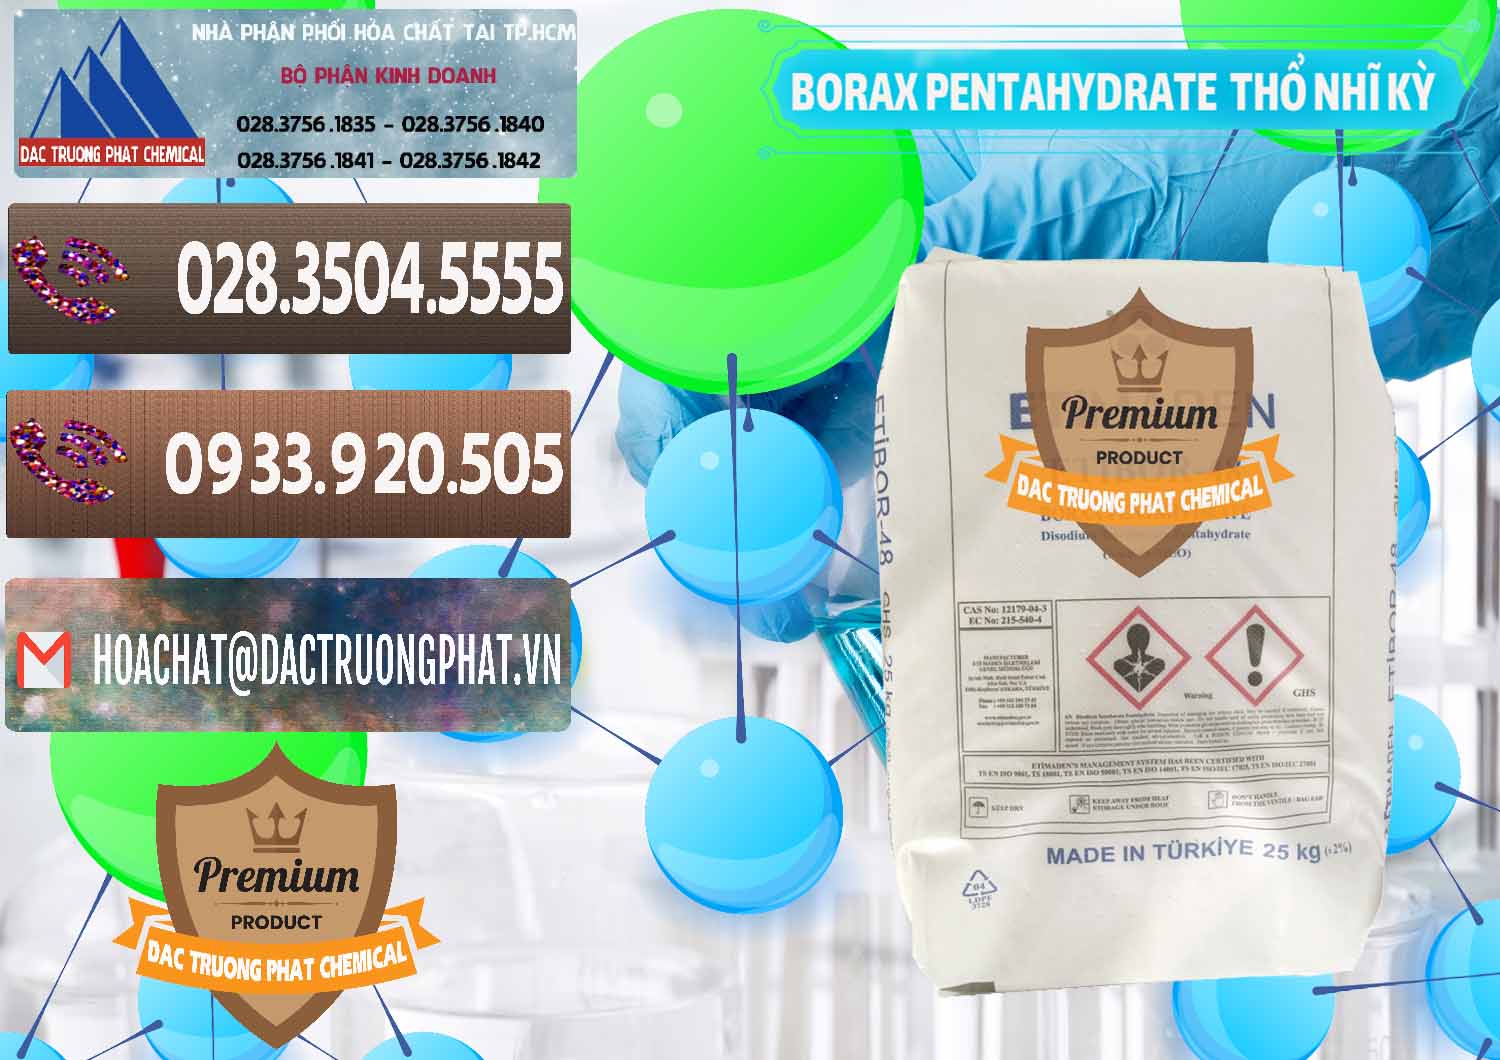 Nơi cung cấp ( bán ) Borax Pentahydrate Thổ Nhĩ Kỳ Turkey - 0431 - Cty phân phối ( kinh doanh ) hóa chất tại TP.HCM - hoachatviet.net